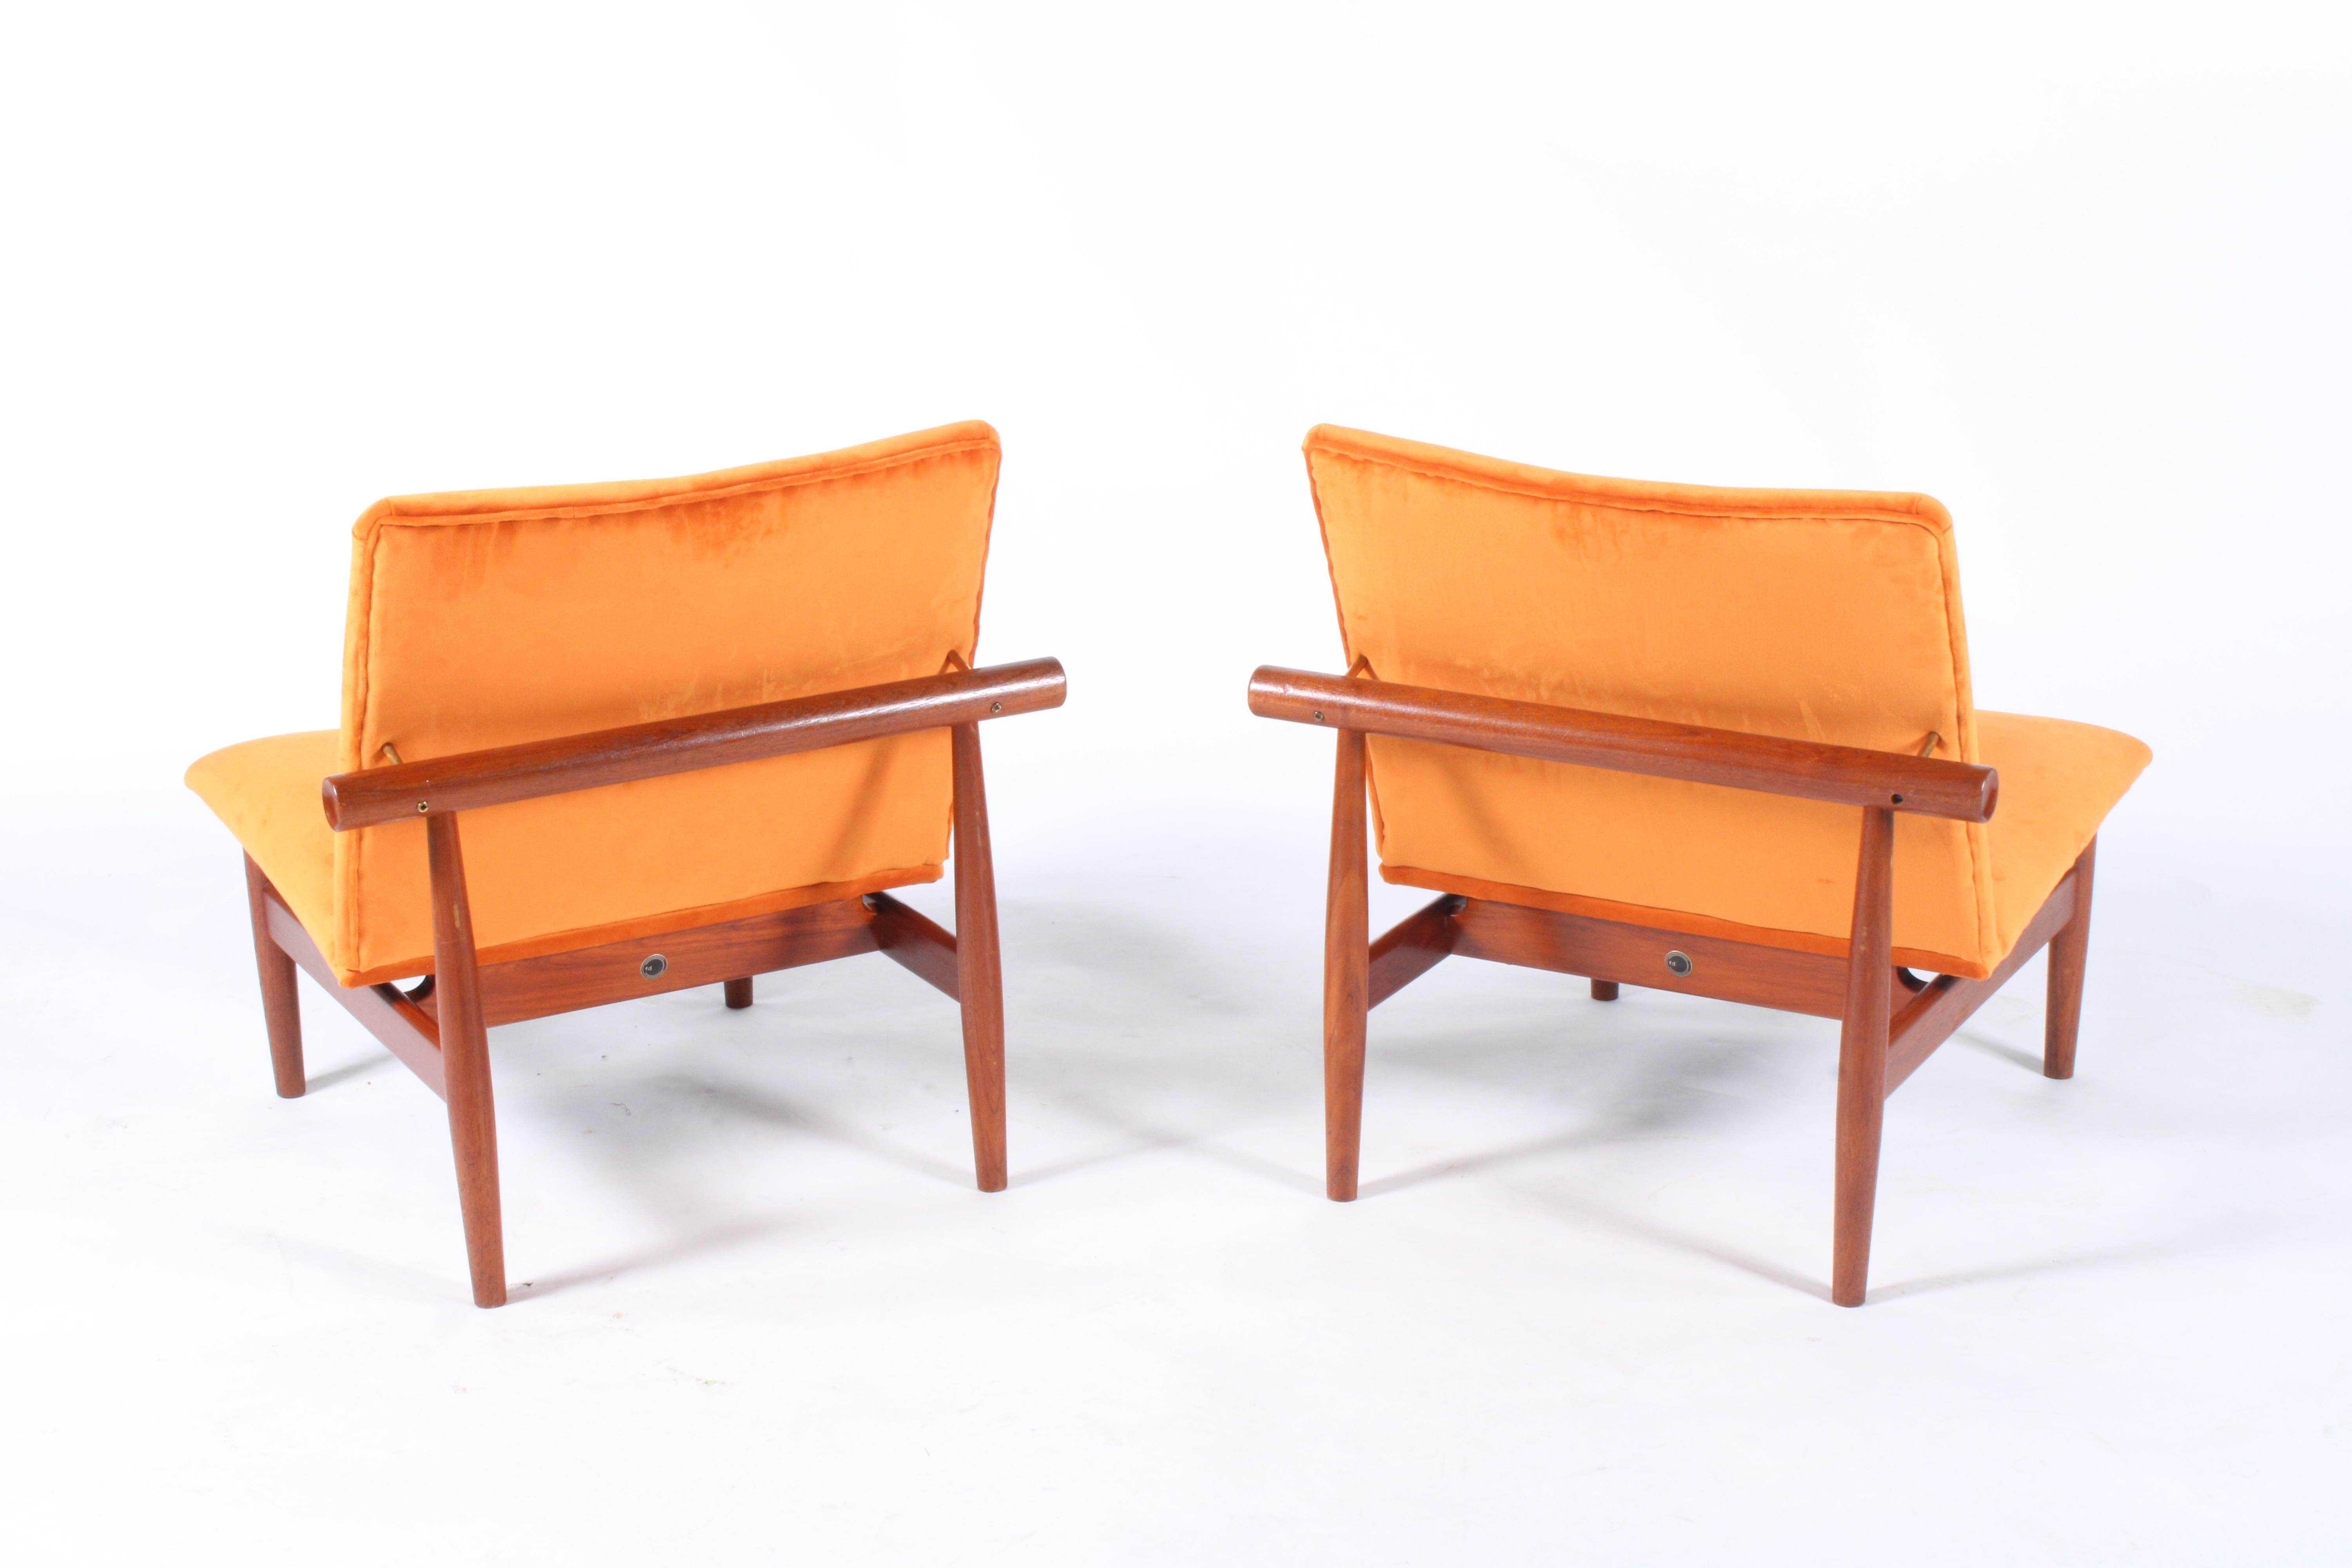 Brass Pair of Iconic Danish Design Japan Chairs by Finn Juhl for France & Daverkosen